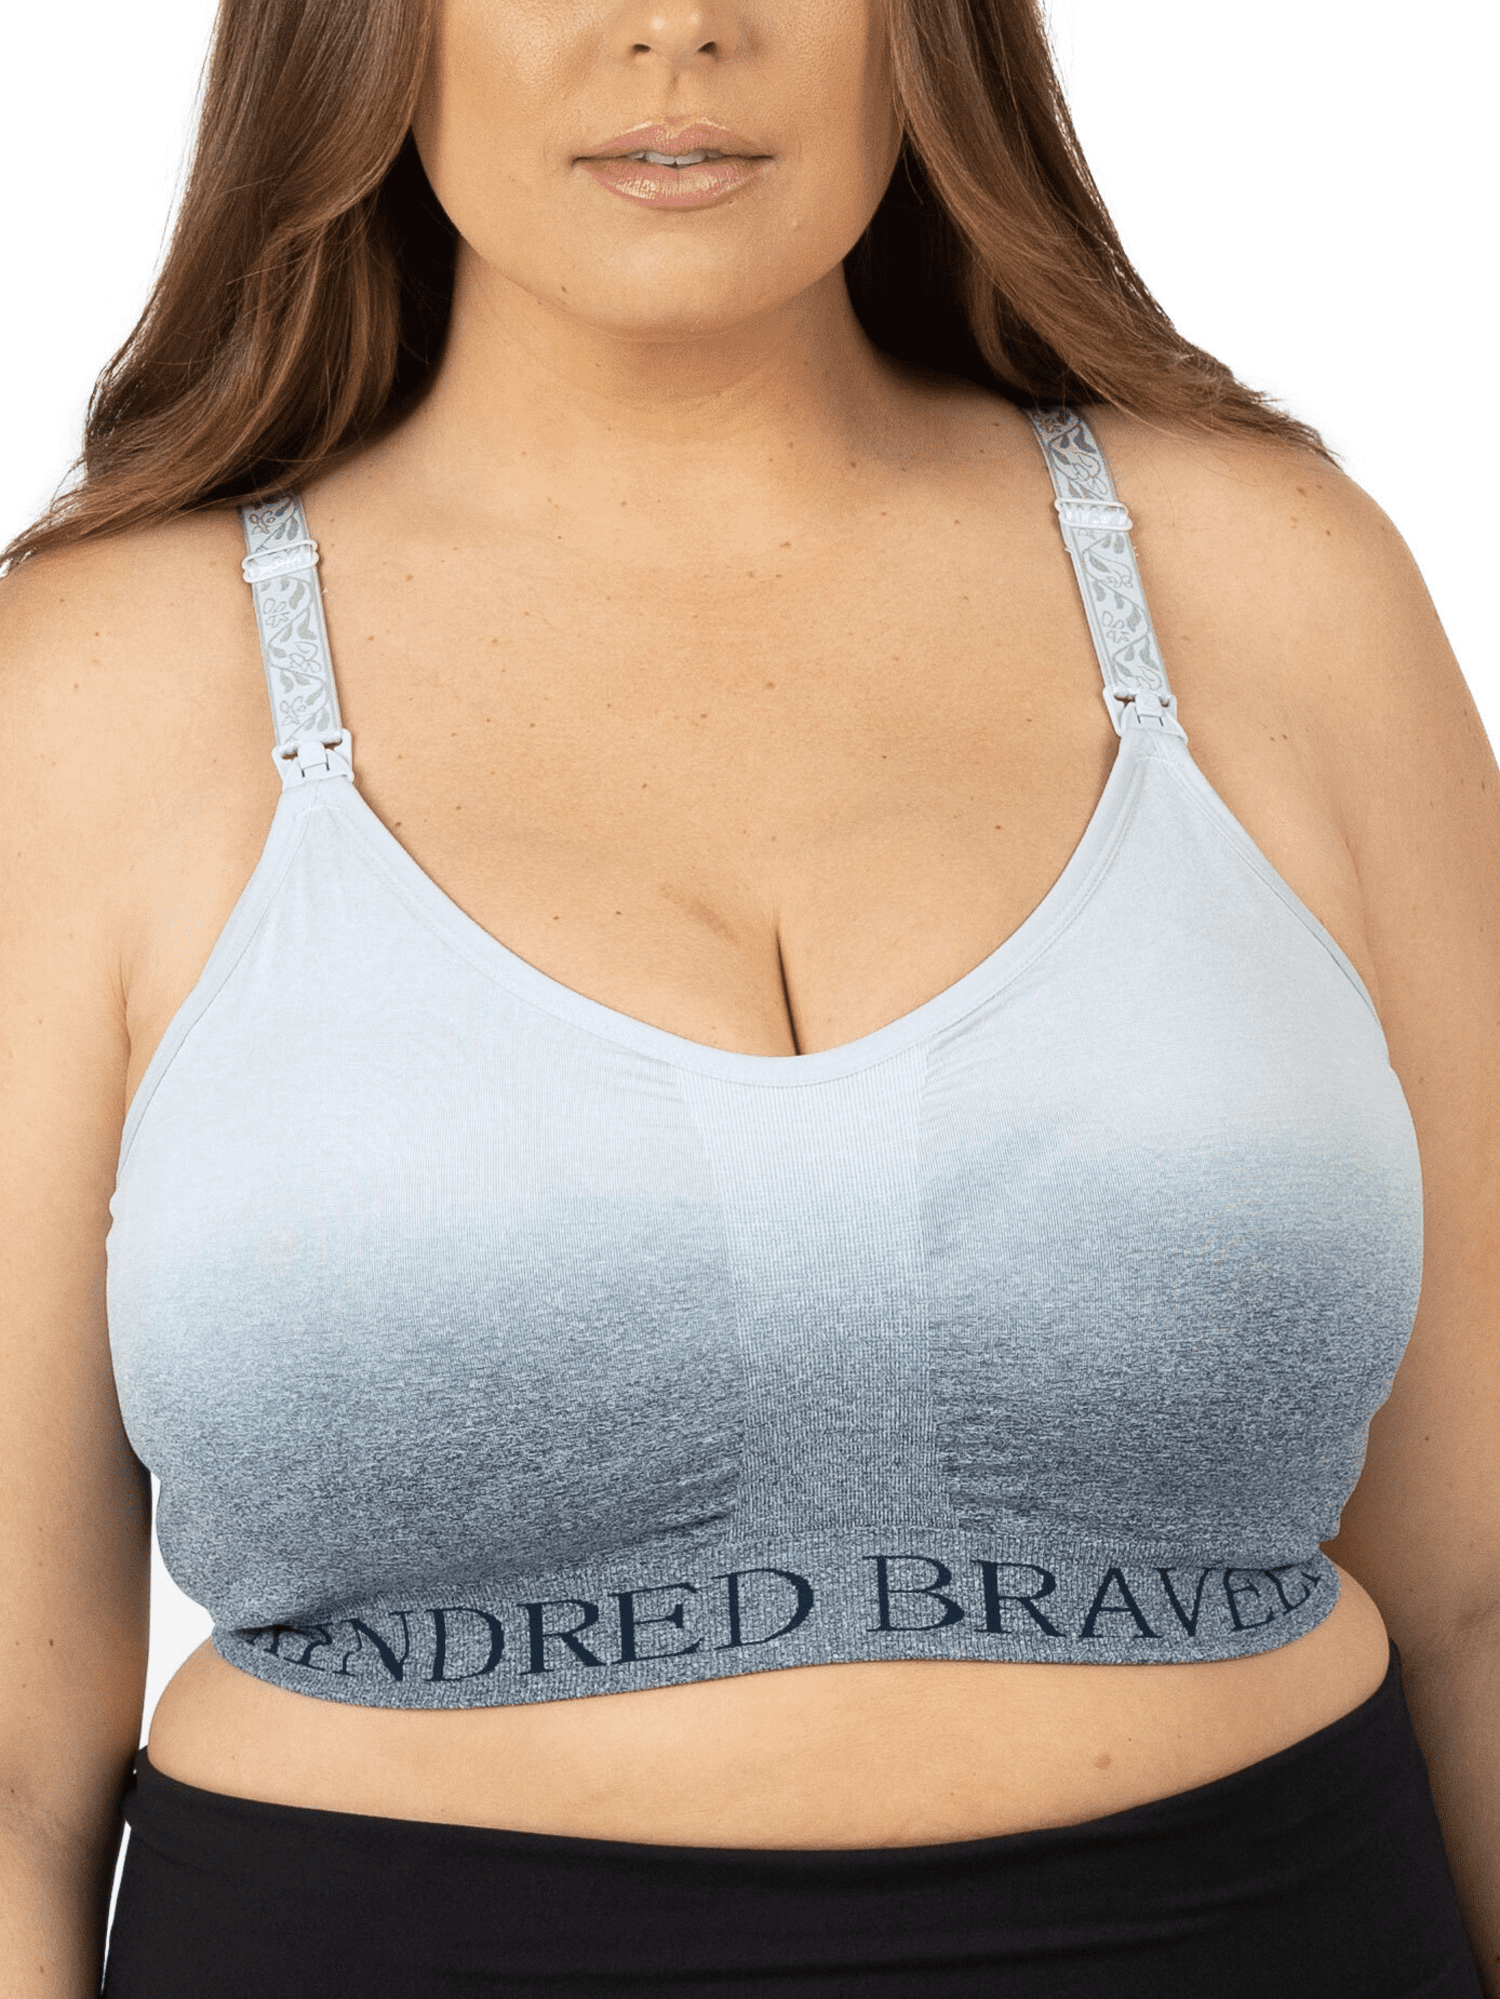 Kindred Bravely Women's Busty Sublime Nursing Bra Plus Sizes